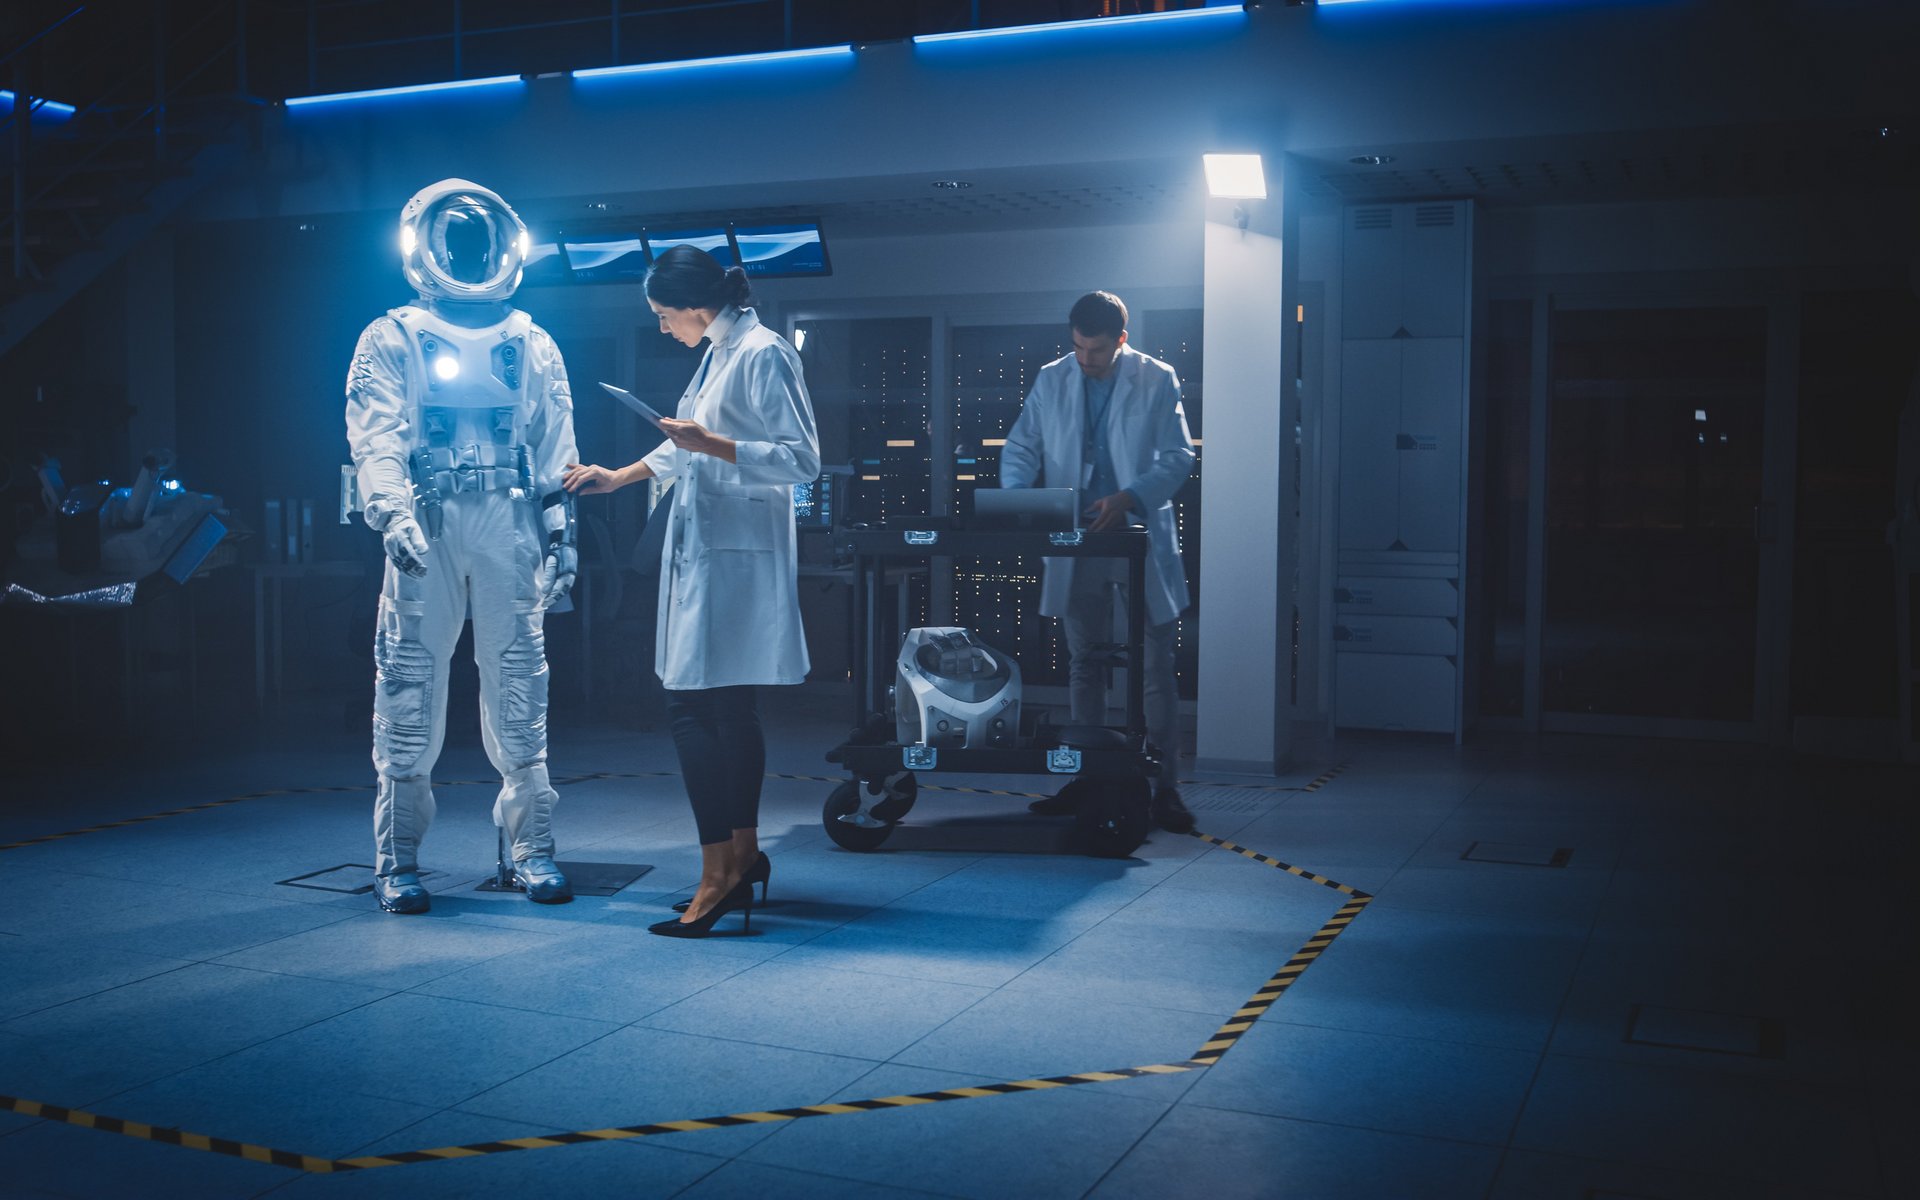 In einem futuristischen Raum steht der Anzug eines Astronauten, eine Frau im weißen Kittel arbeitet daran. Ein Mann steht im Hintergrund, die Wissenschaftler konfigurieren den Raumanzug.